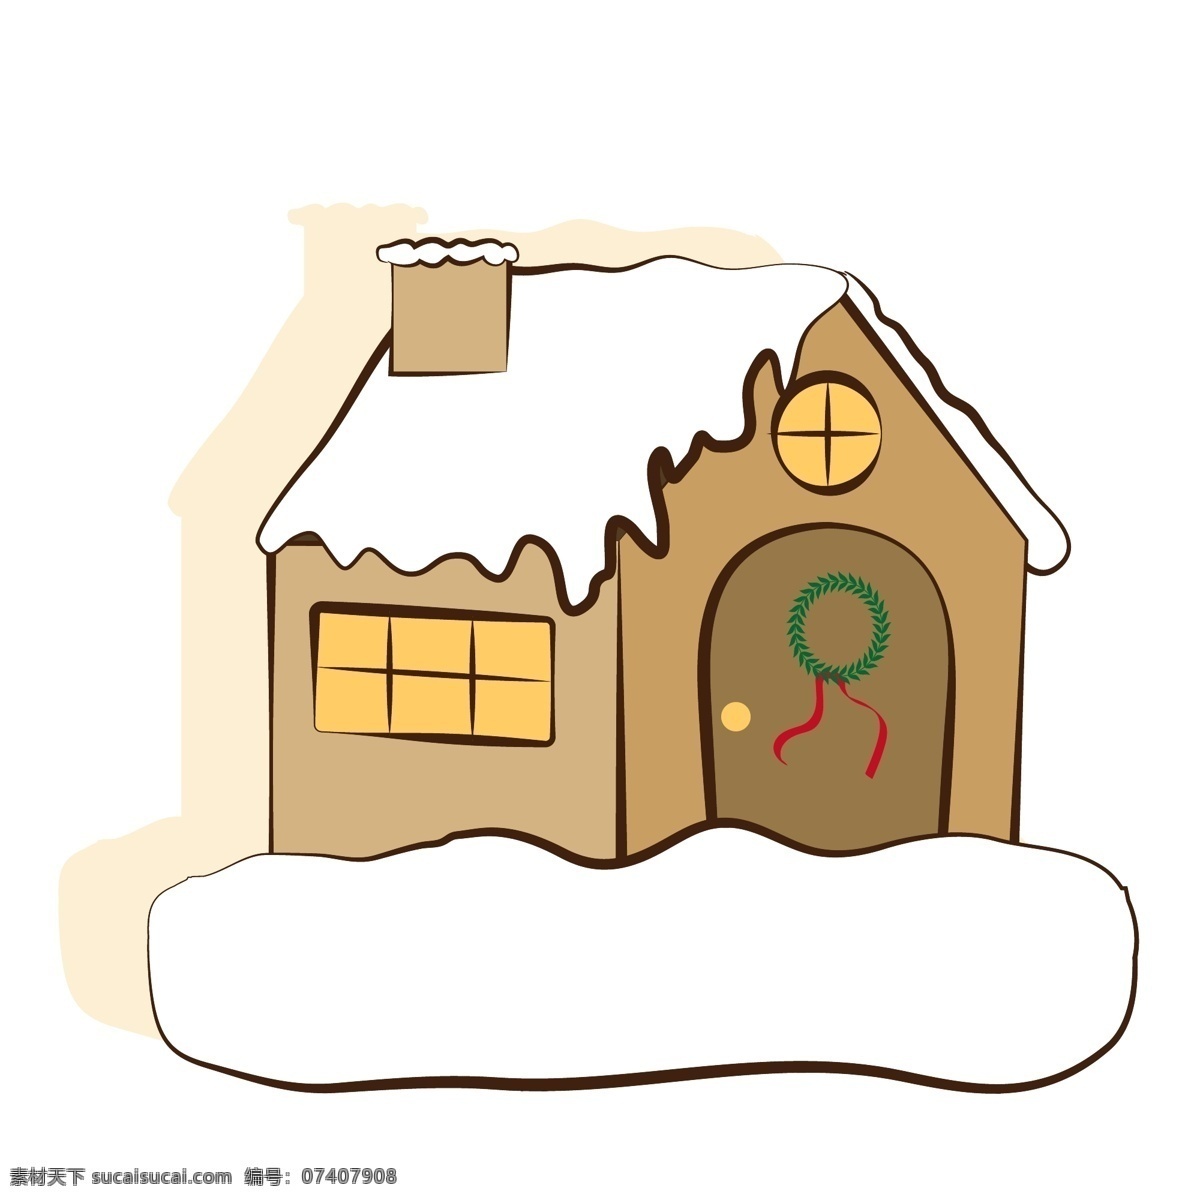 原创 矢量 卡通 覆盖 雪 房子 商用 冬季 冬天 寒冷 屋内 暖